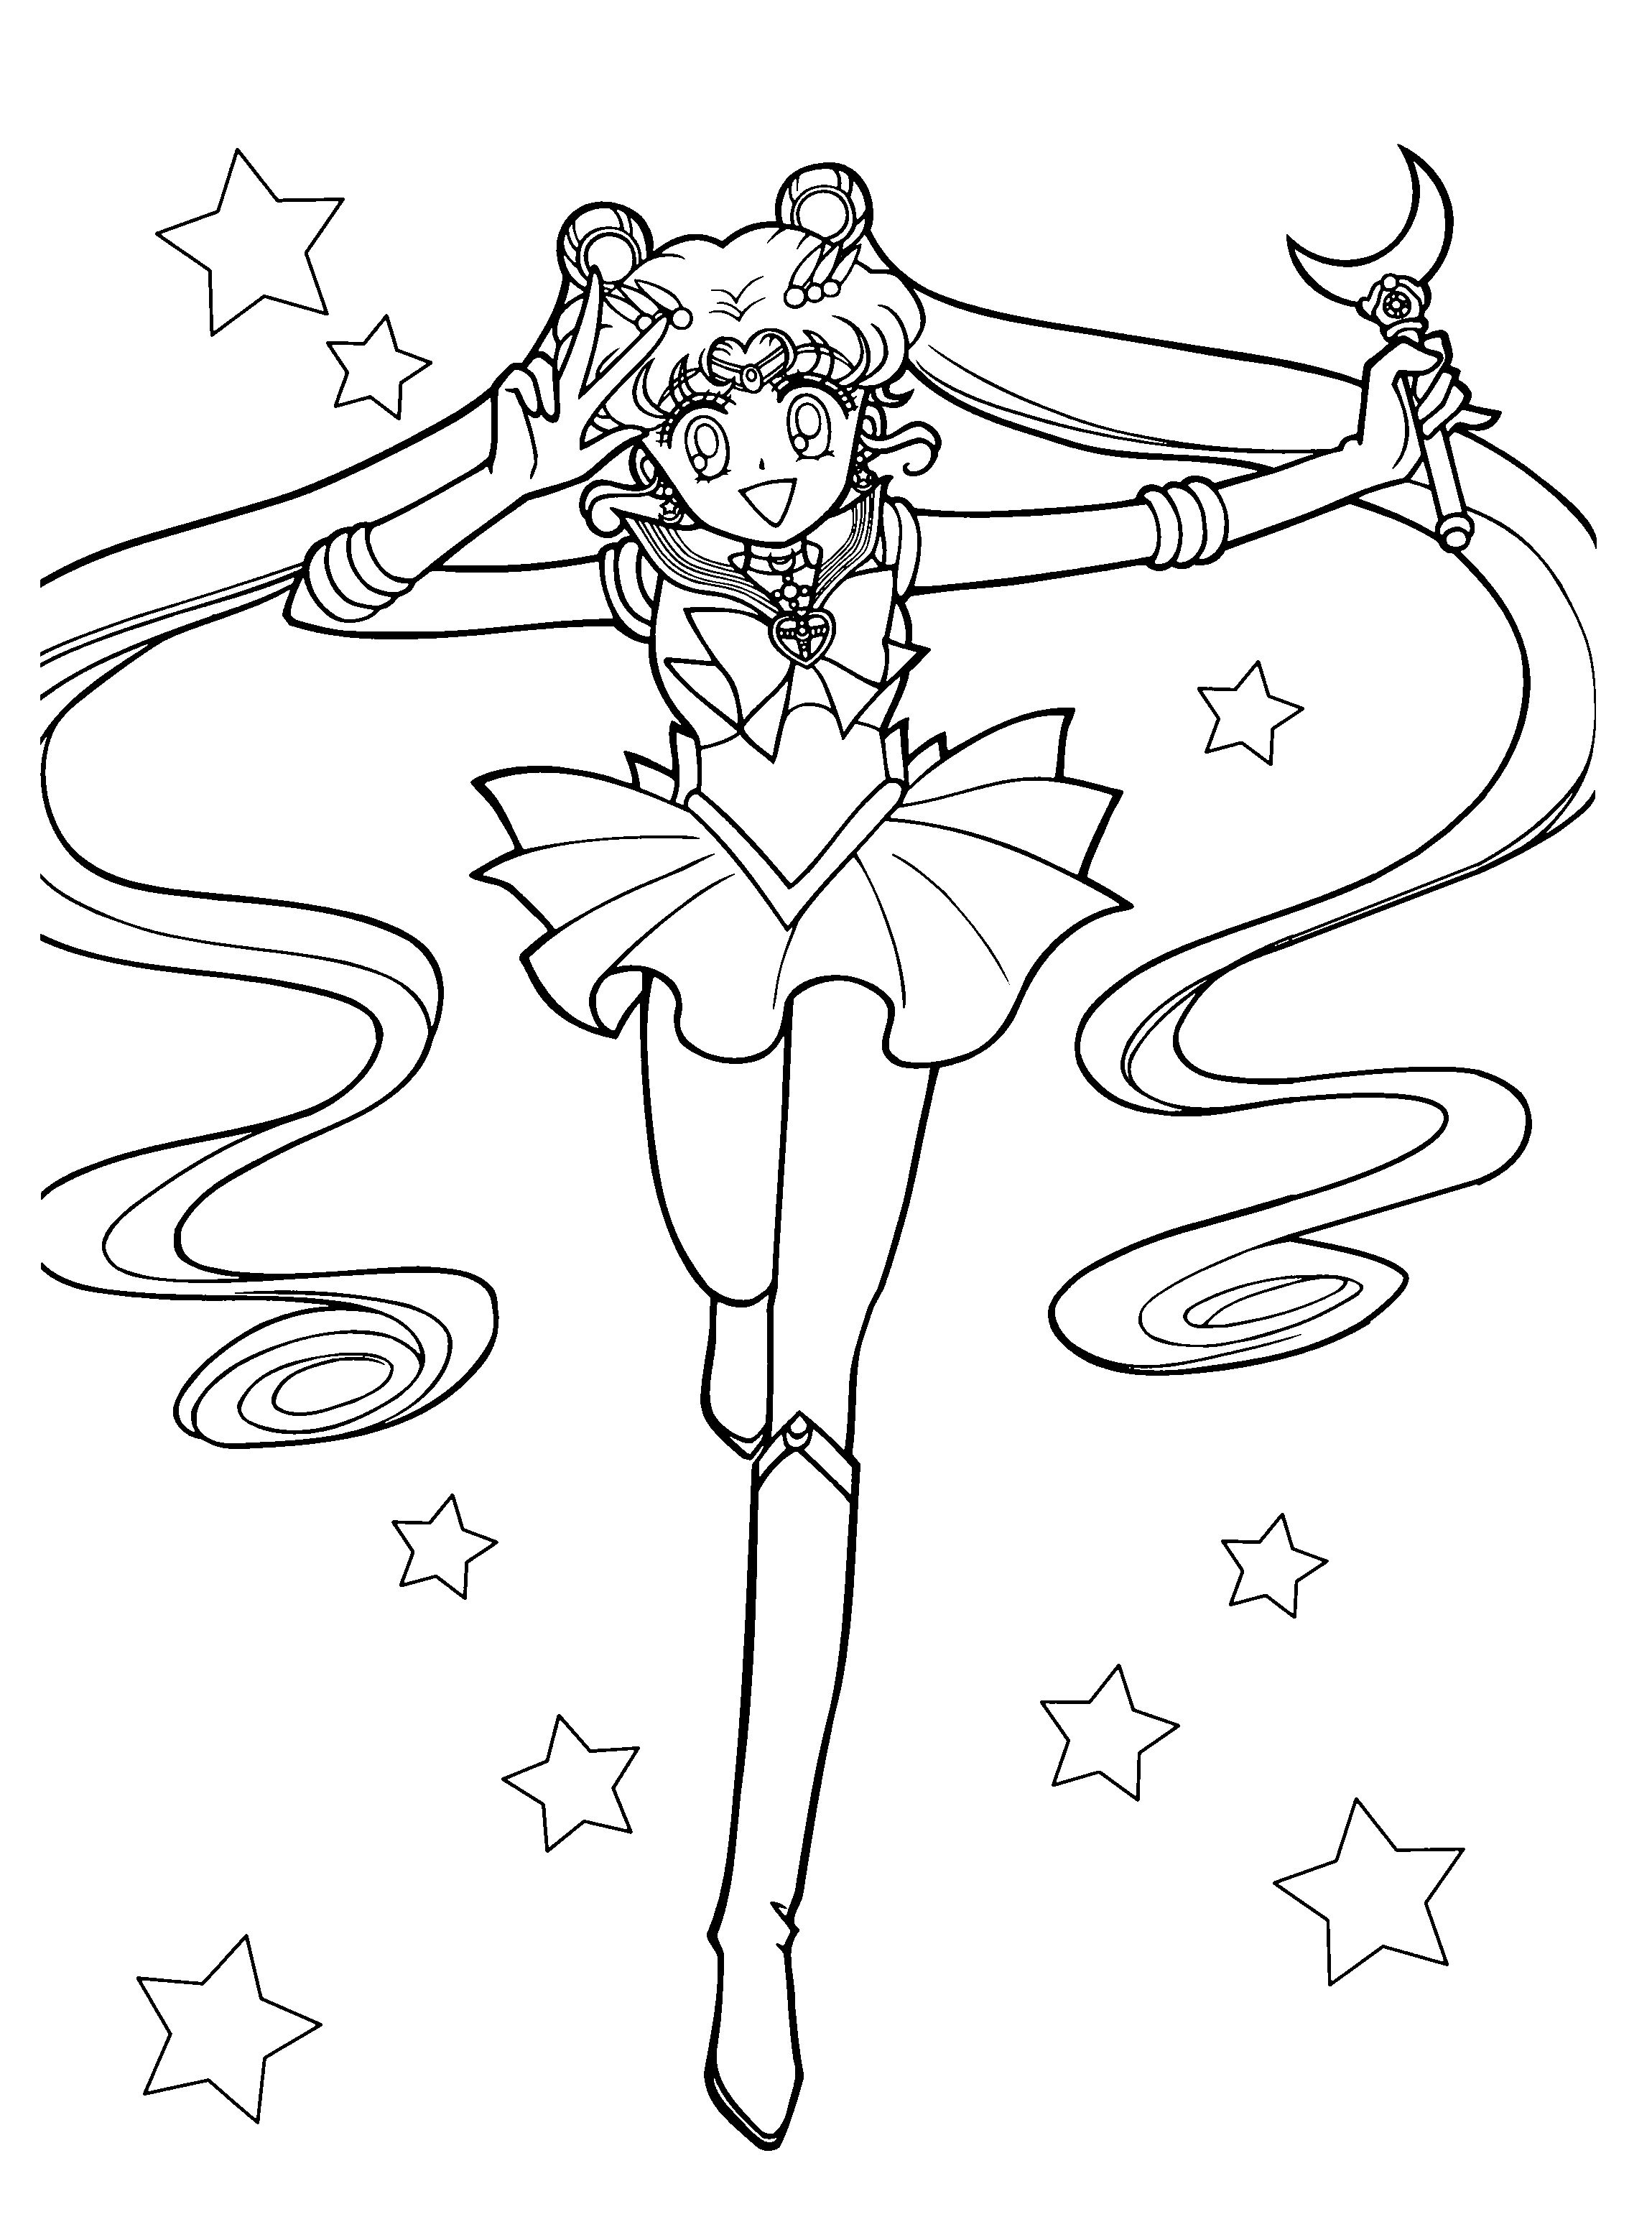 Sailormoon ausmalbilder